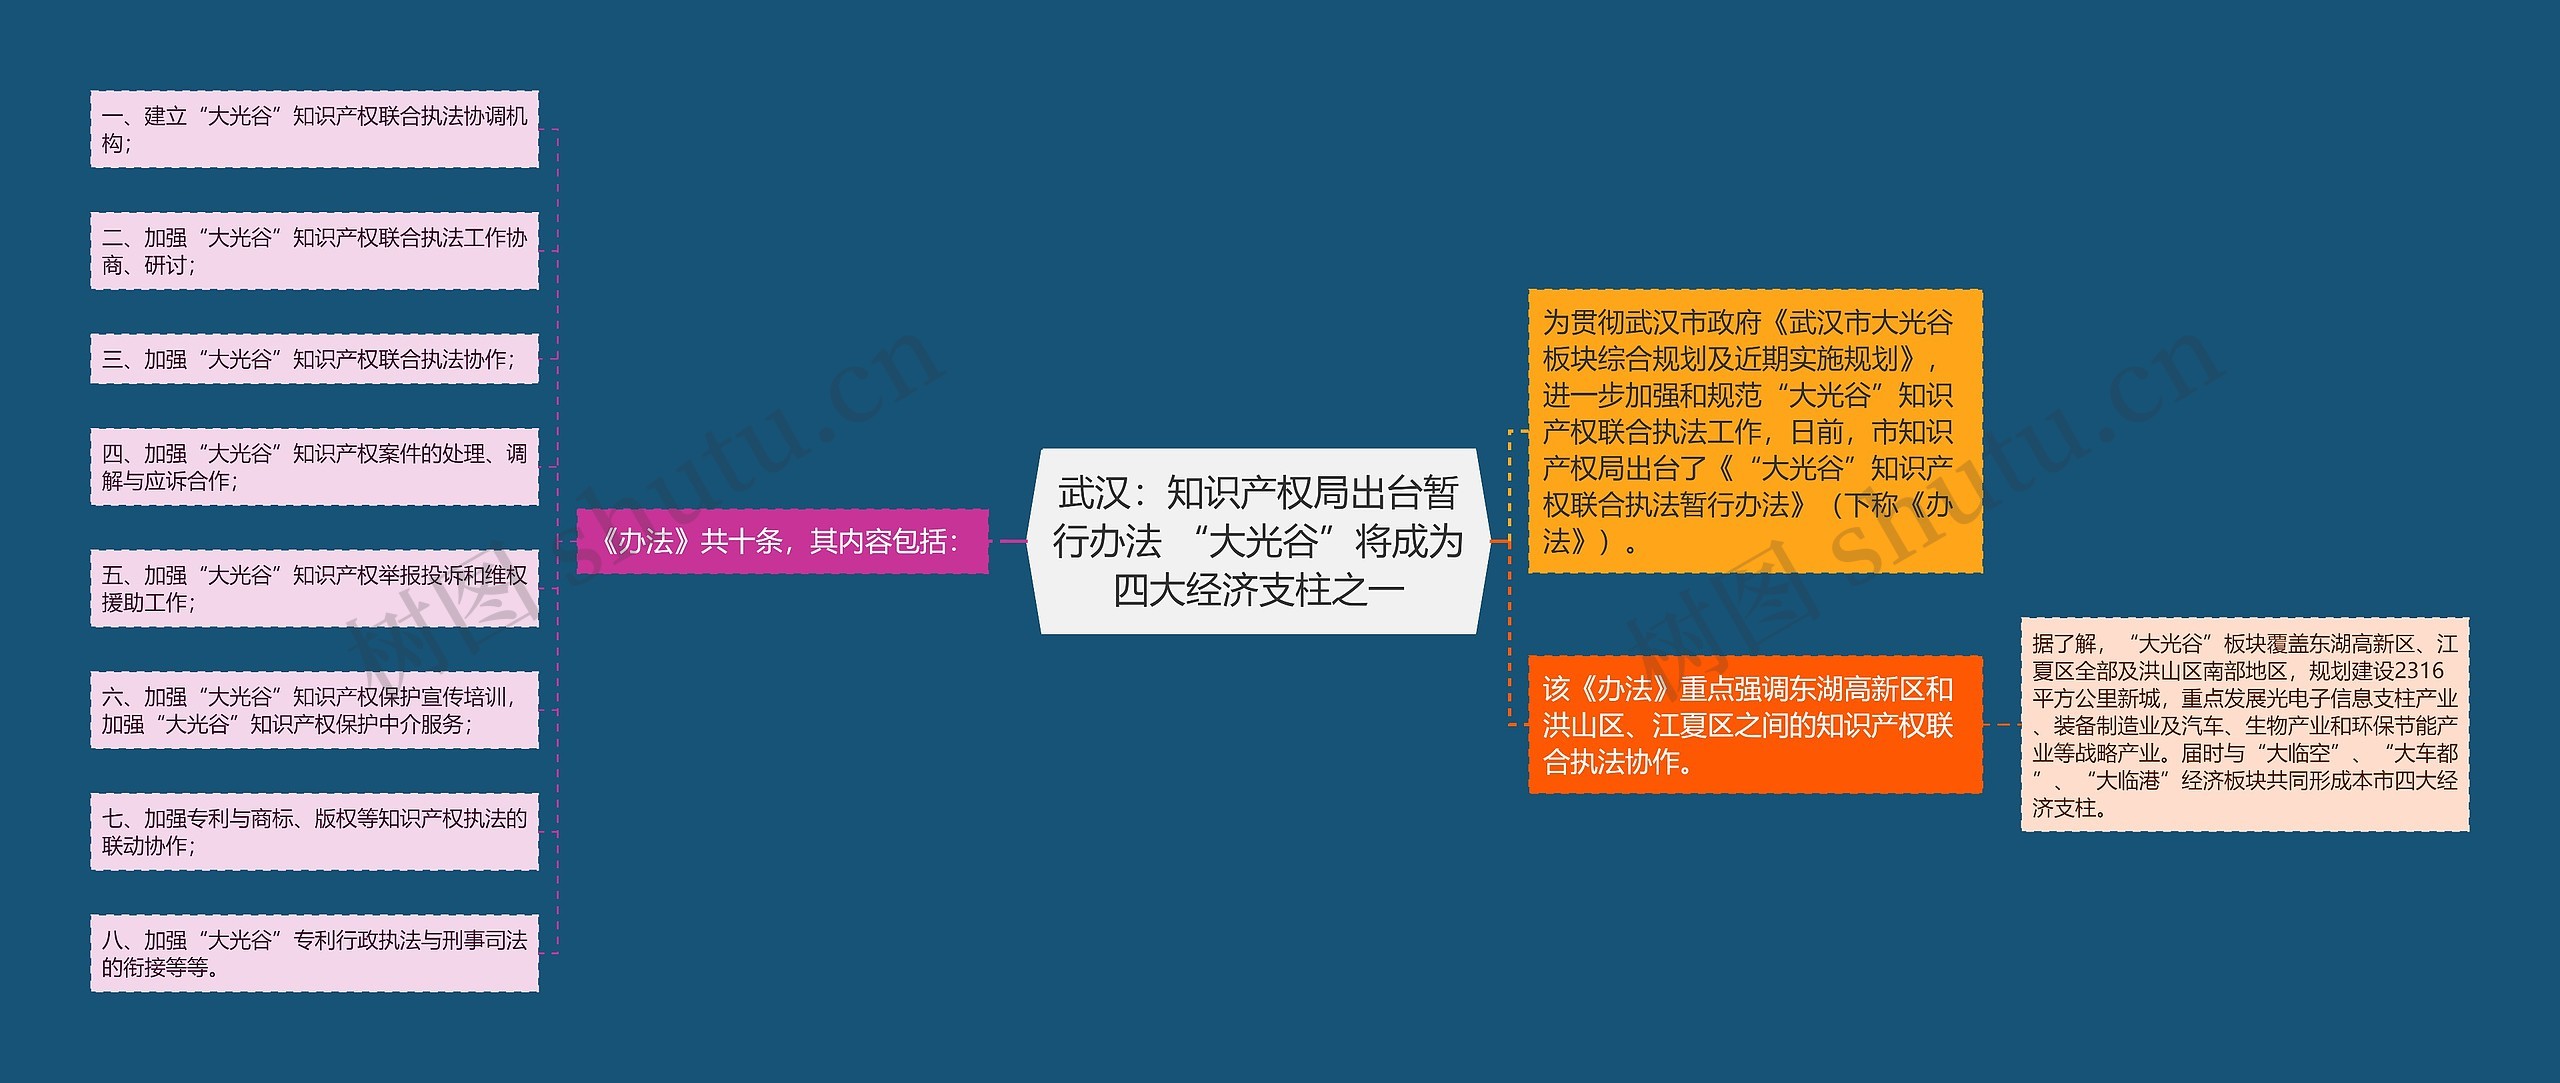 武汉：知识产权局出台暂行办法 “大光谷”将成为四大经济支柱之一